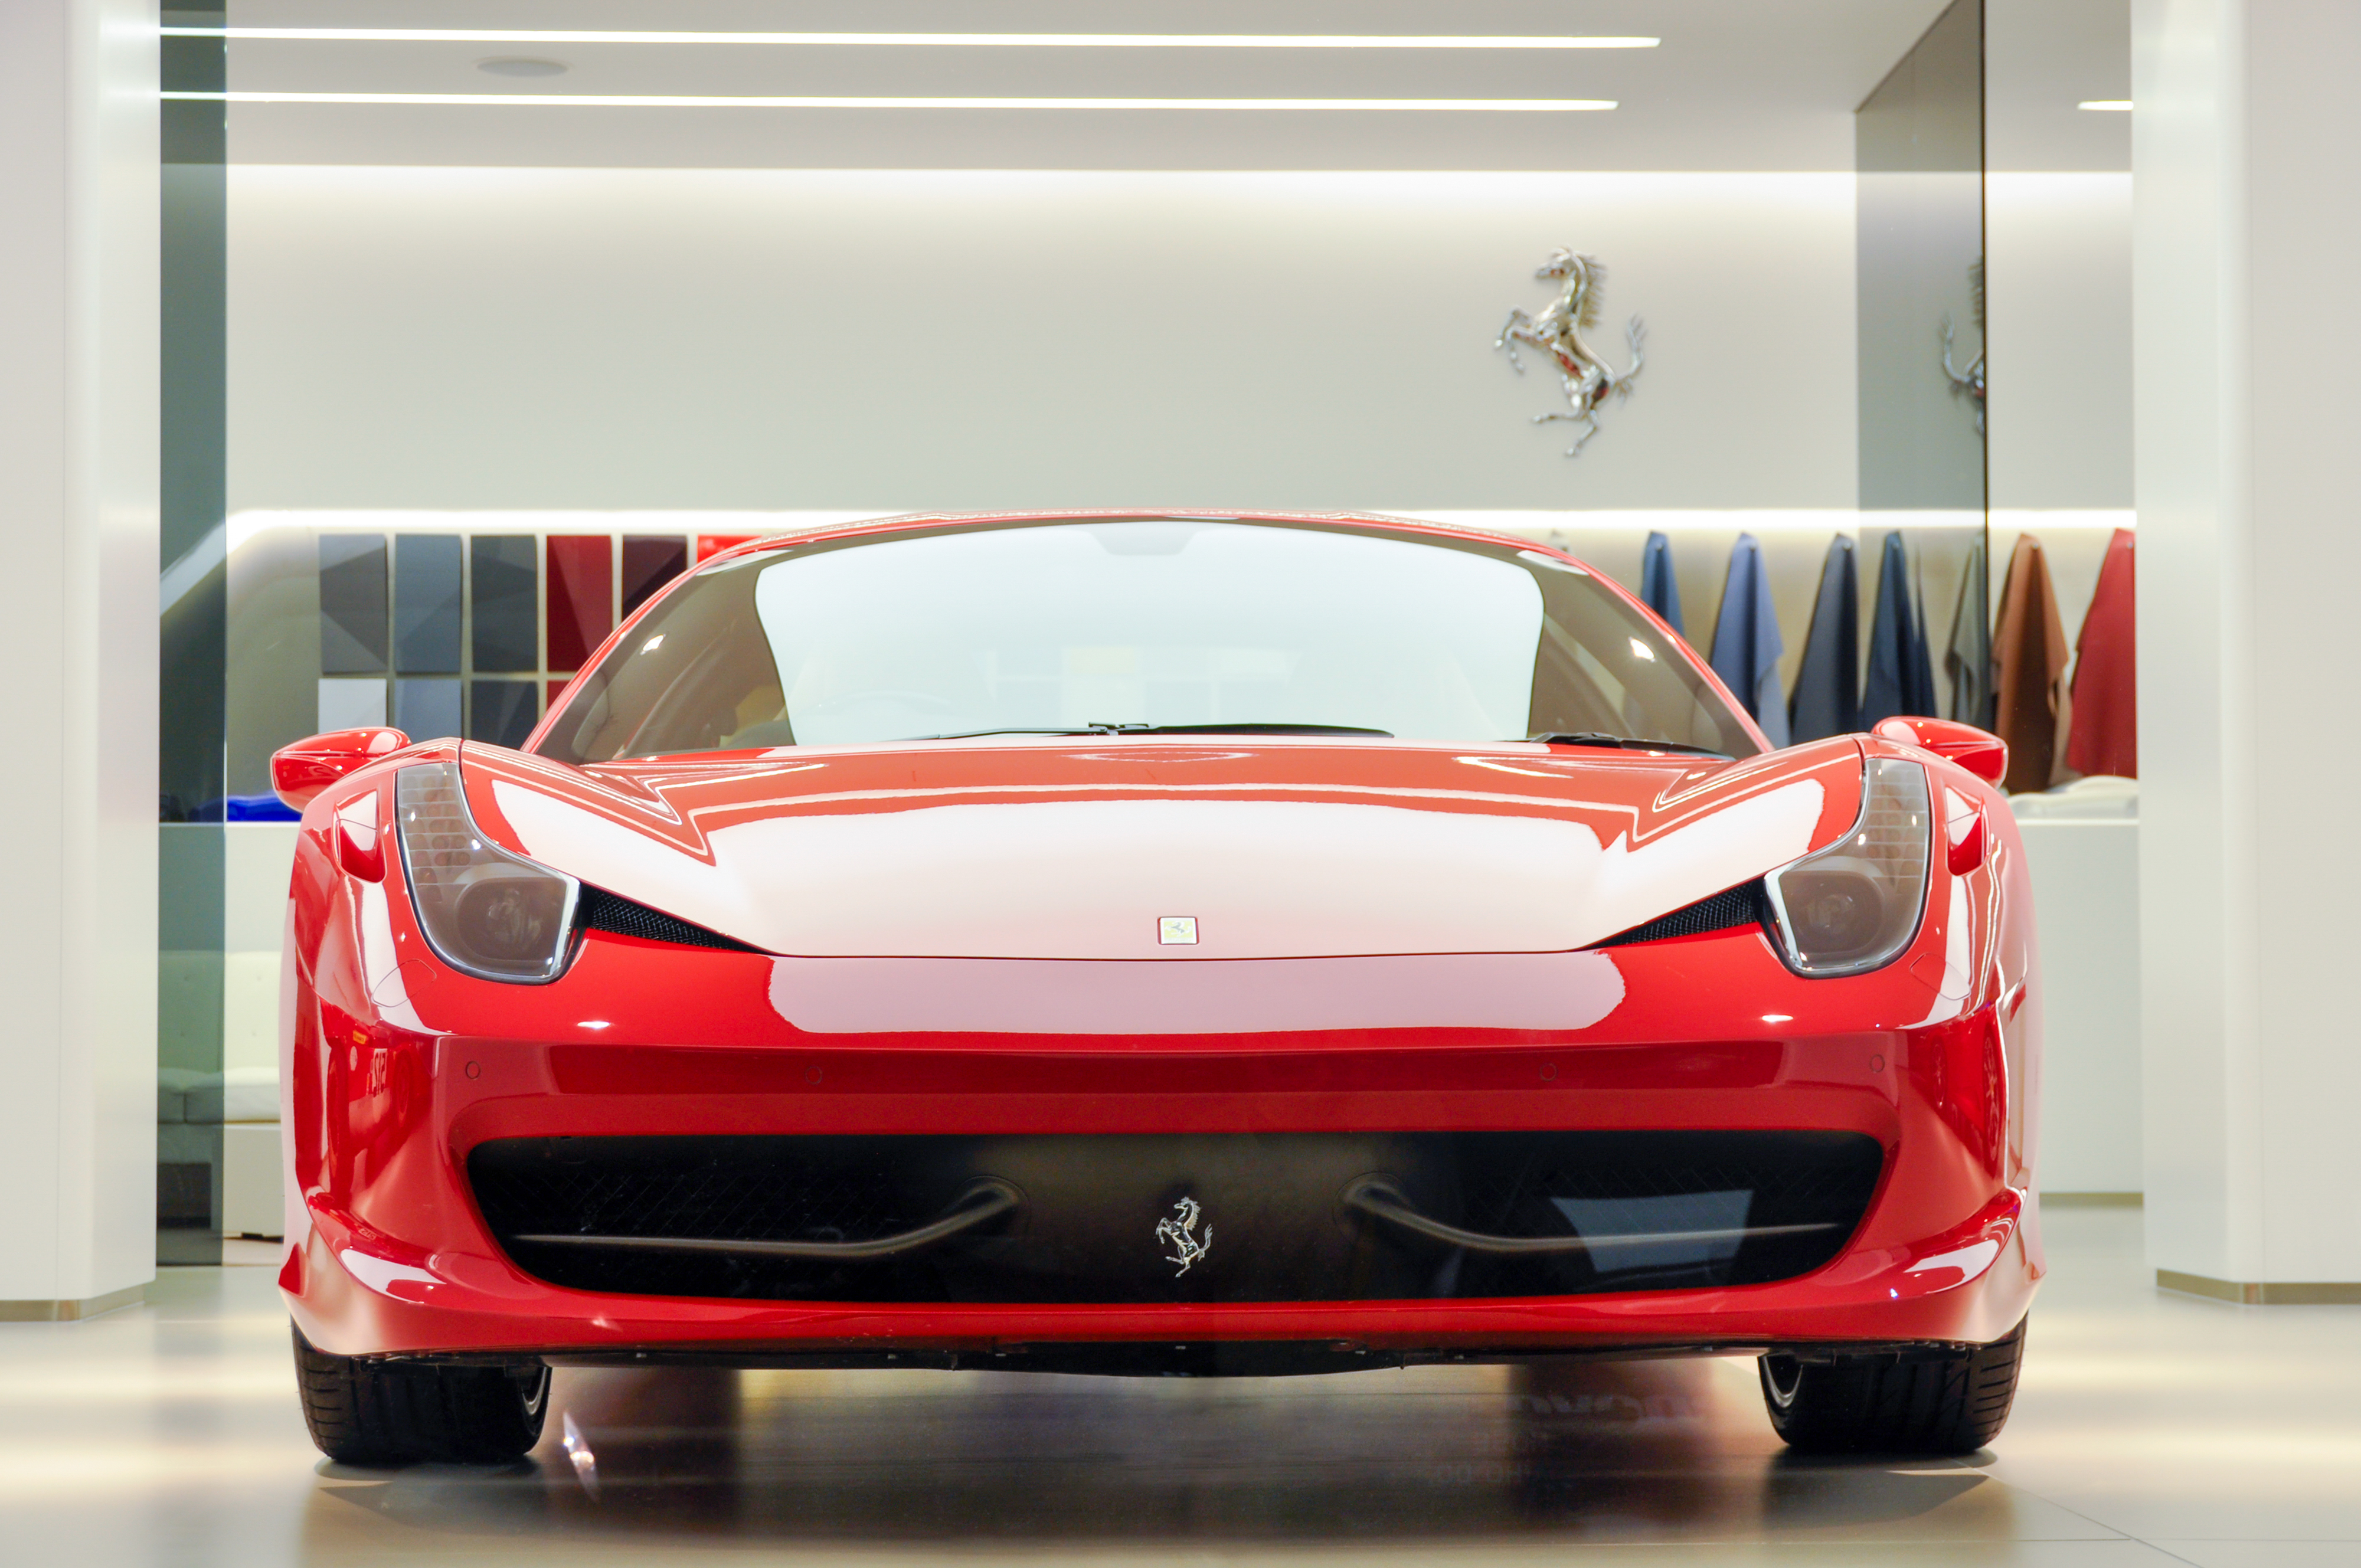 Egy magyarnak 14 Ferrarija van, de még így sem ő a hazai rekorder - Blikk